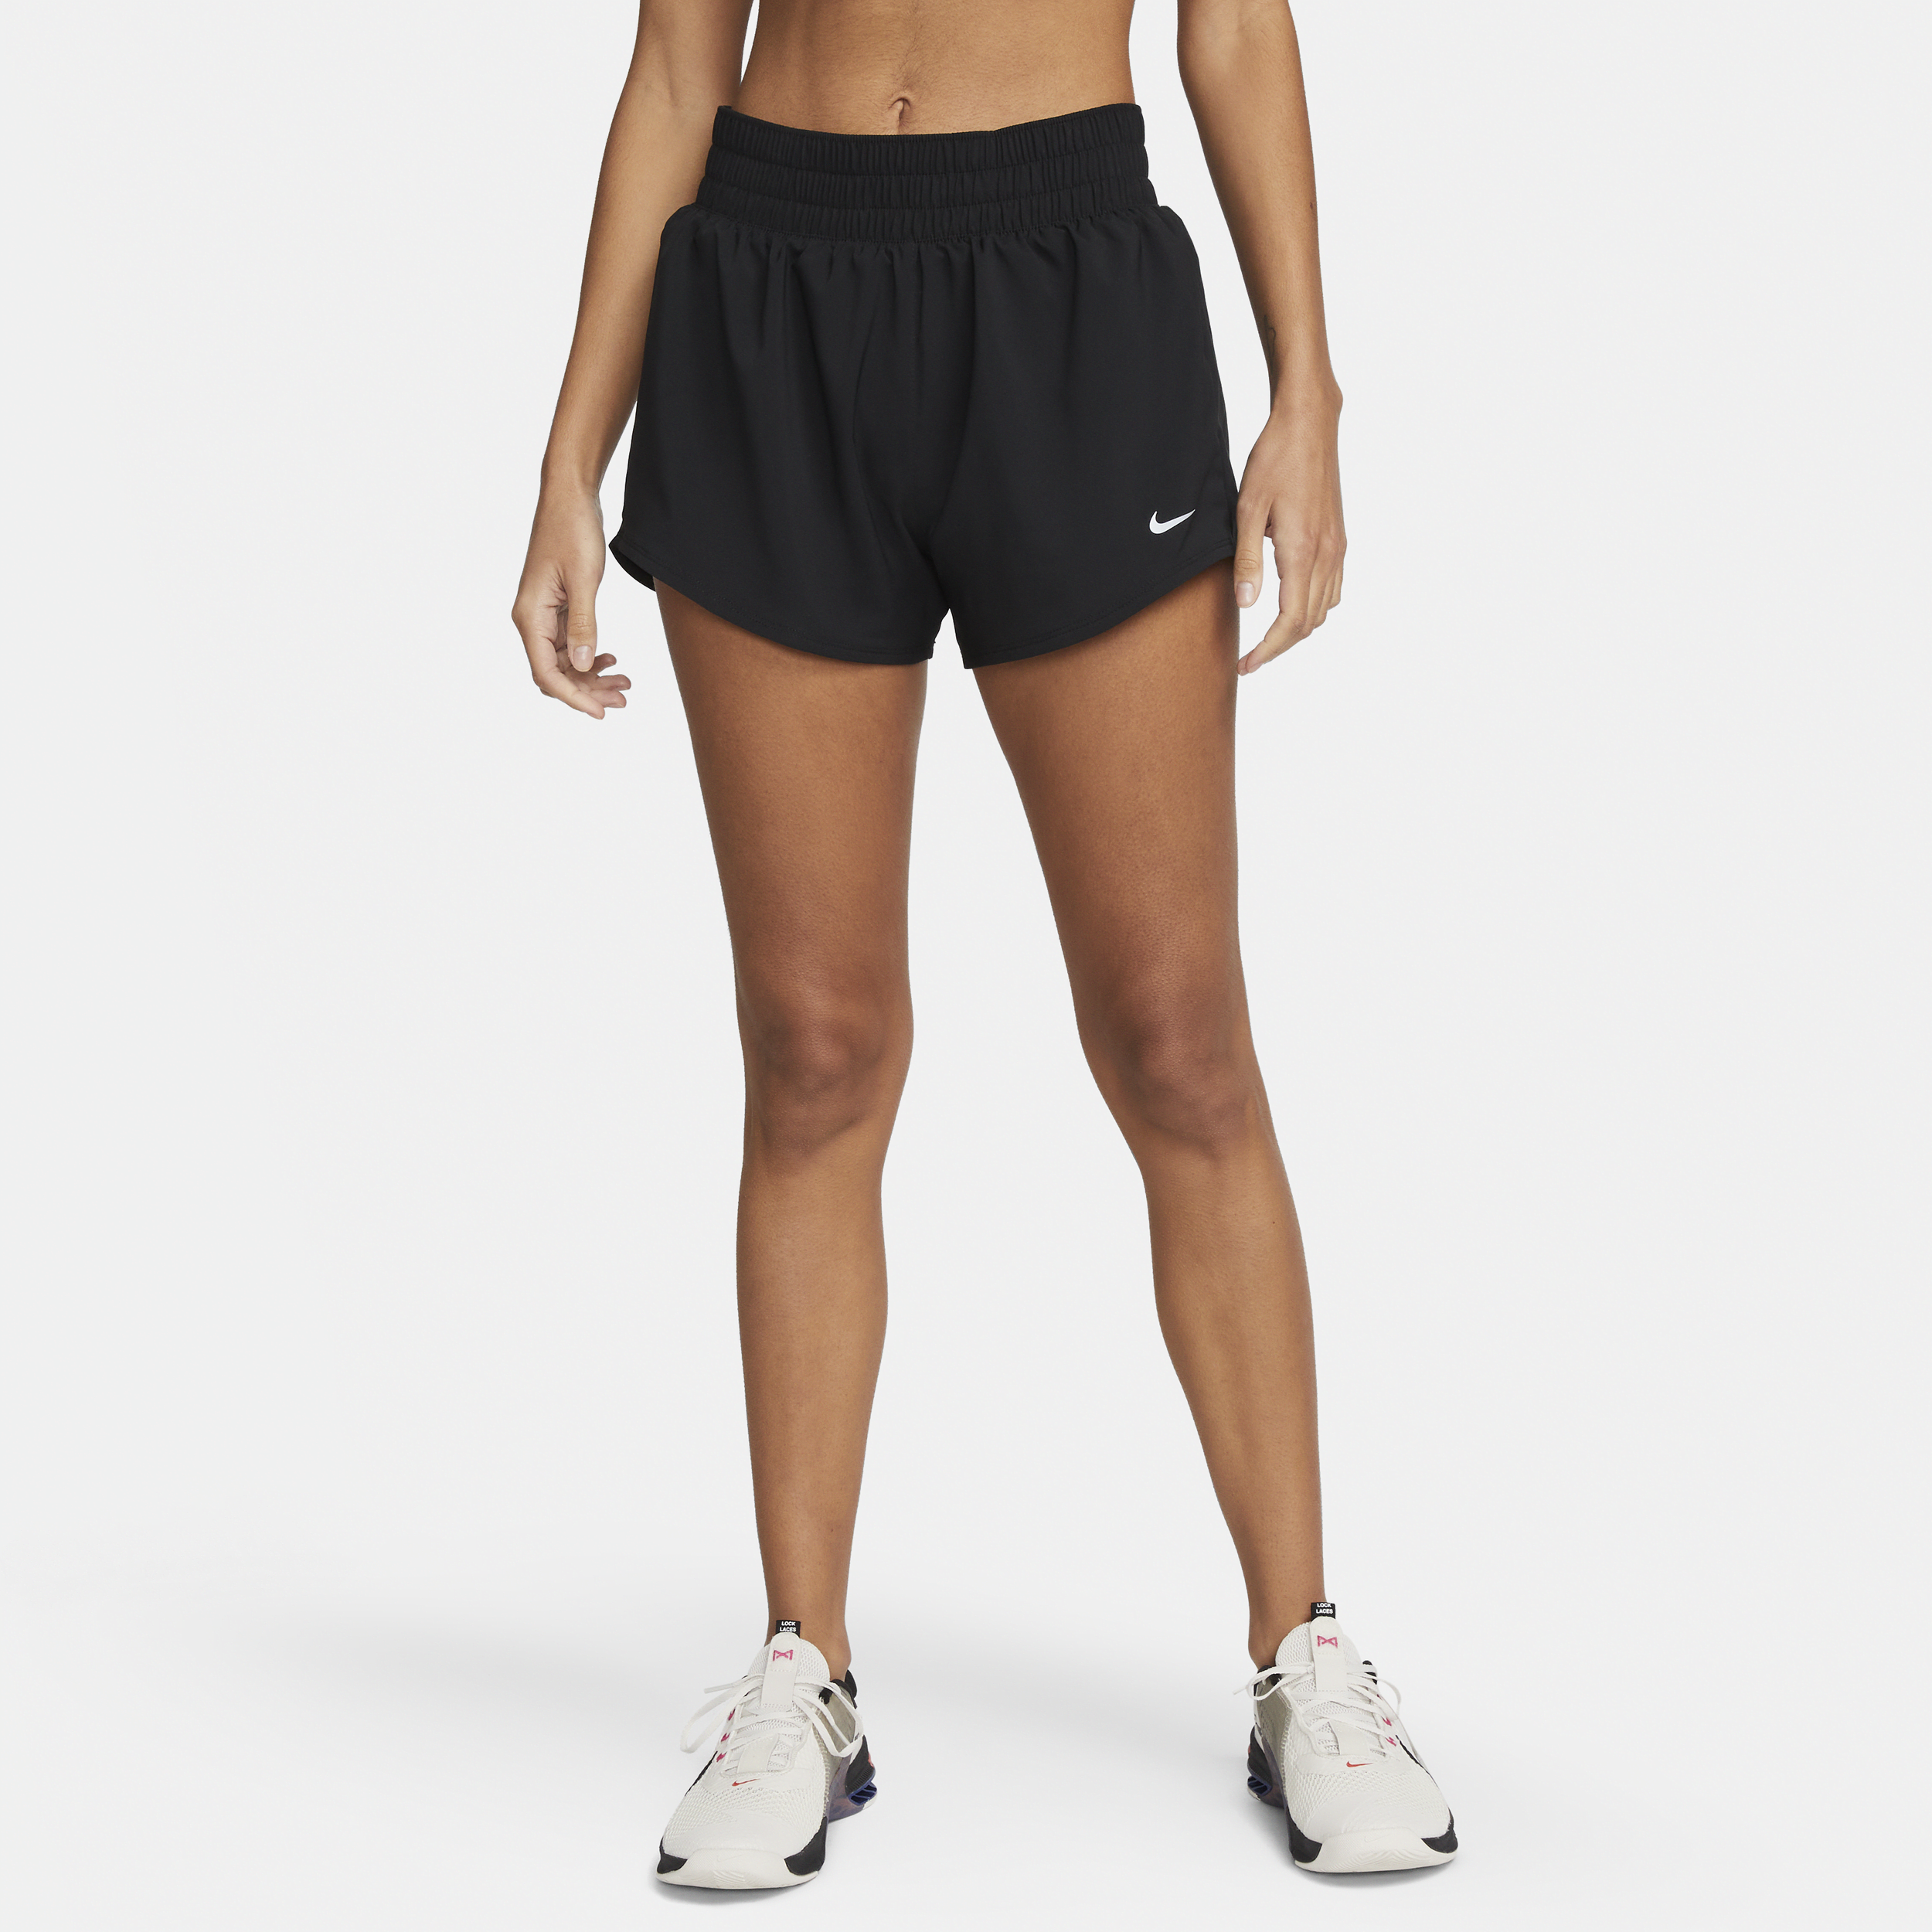 Nike One Pantalón corto con malla interior de talle medio y 8 cm Dri-FIT- Mujer - Negro